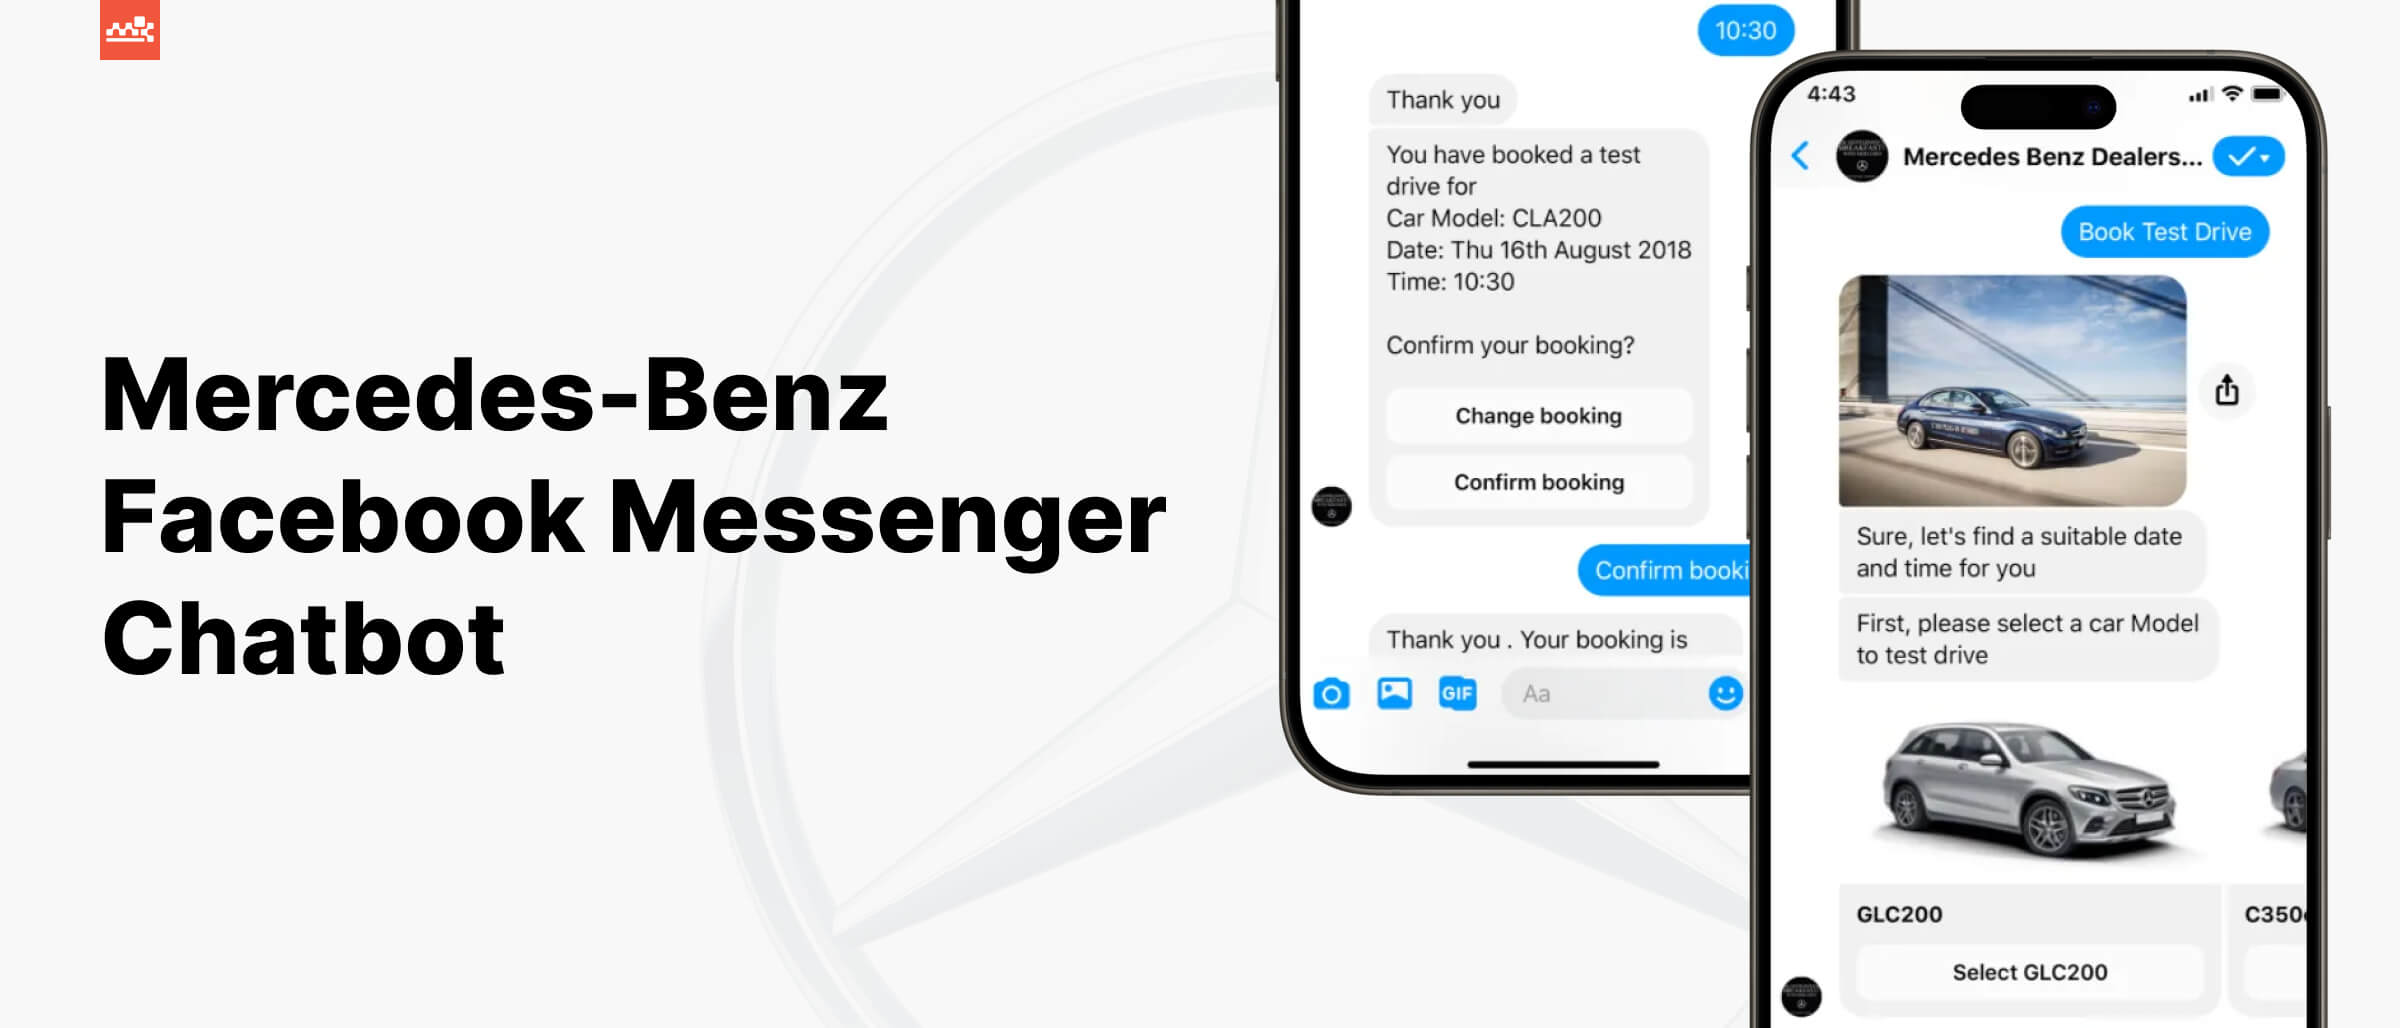 Mercedes-Benz Facebook Messenger bot